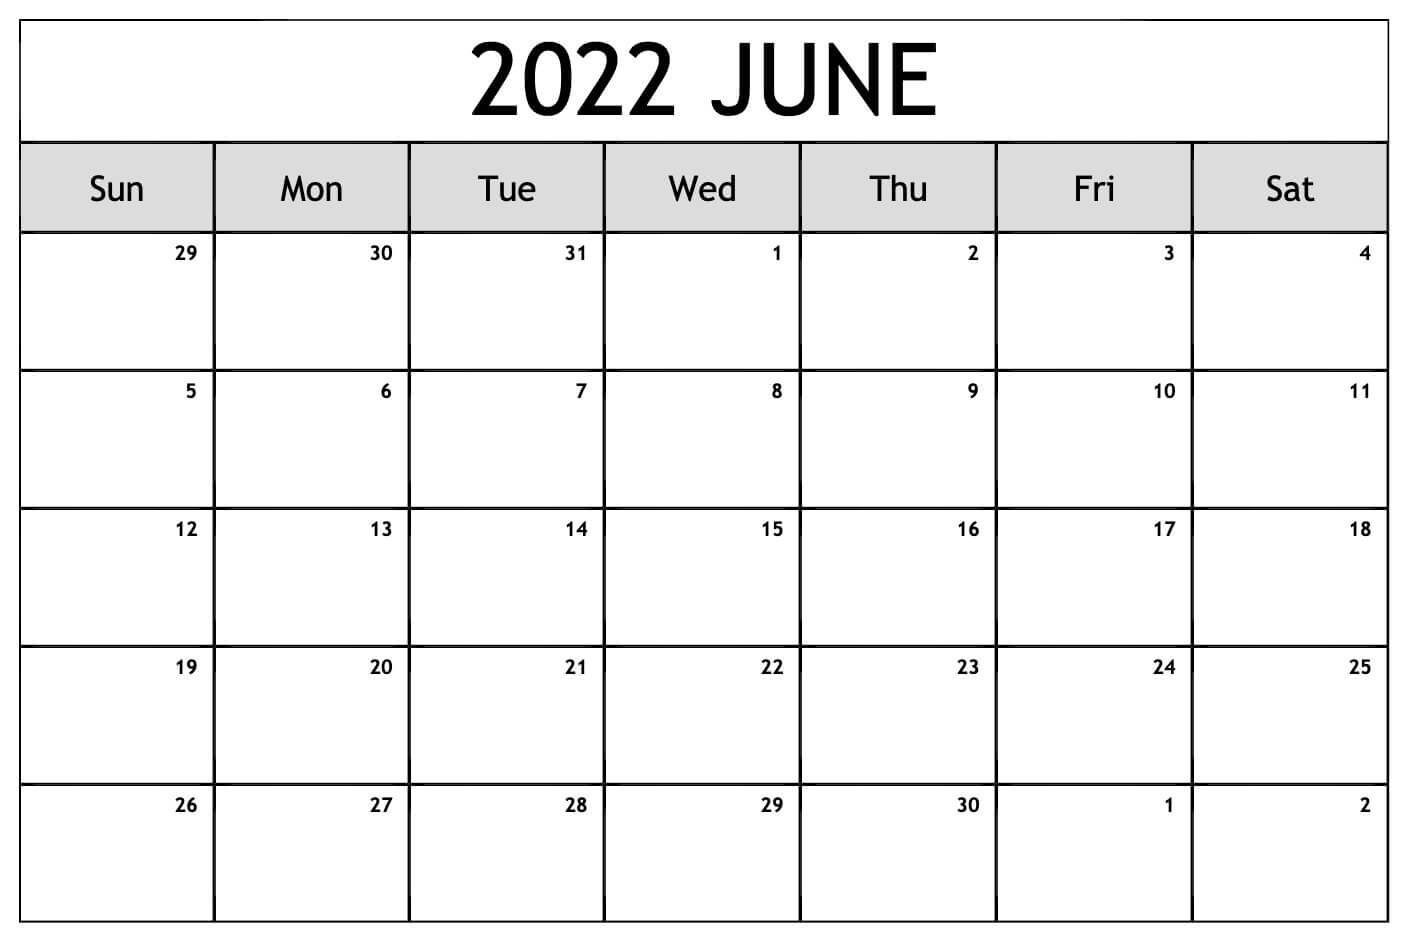 June 2022 Blank Calendar Template and Work Sheet